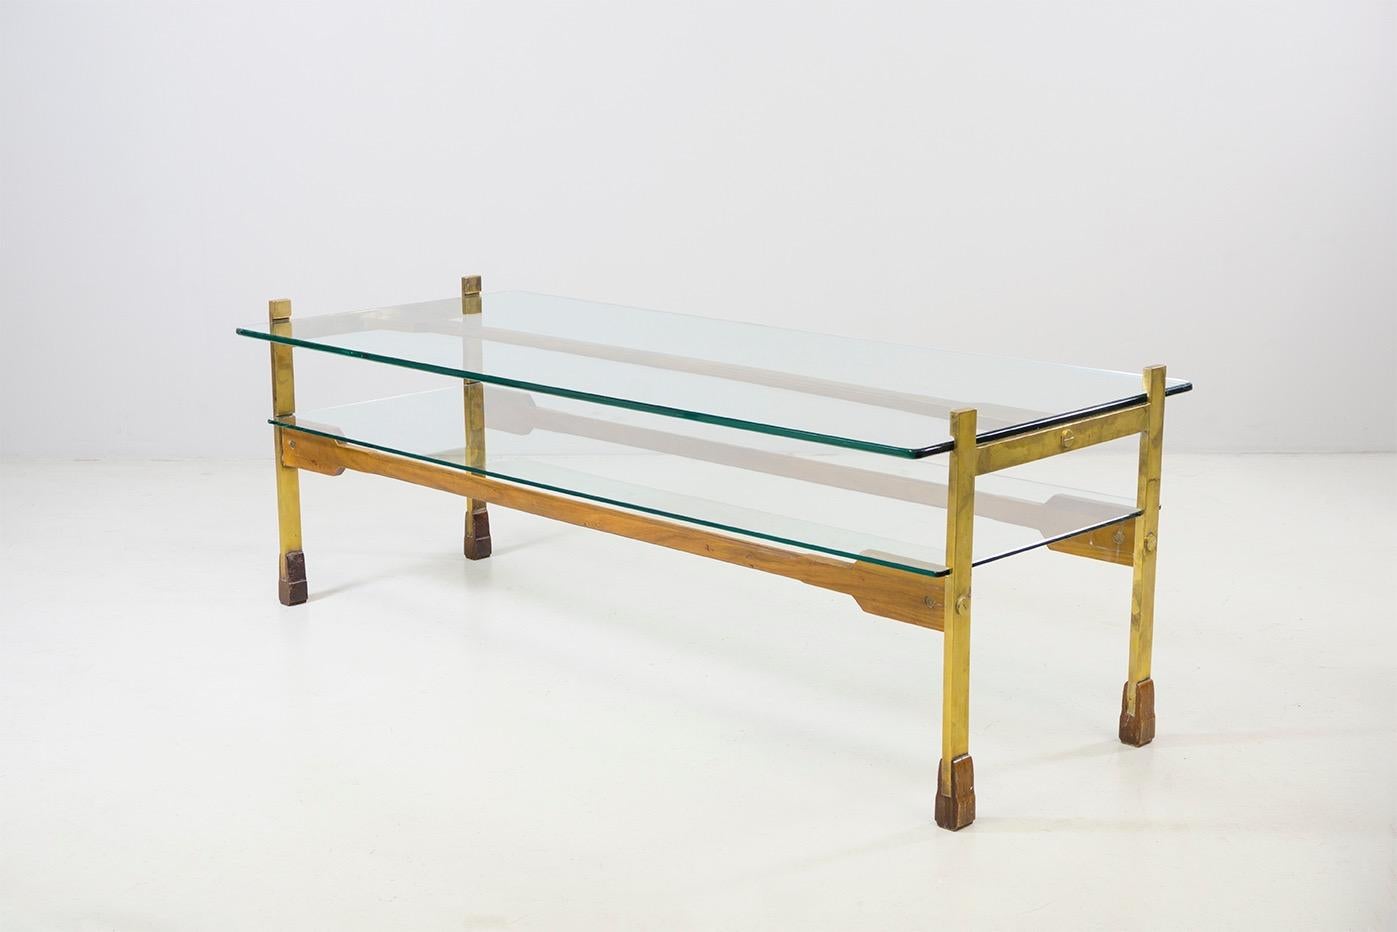 Table made of brass and wood, with cristallo glas plates
Dimensions H. 44 cm x W. 121 cm x D. 51 cm
Design Santambrogio & De Berti, 1960.

 